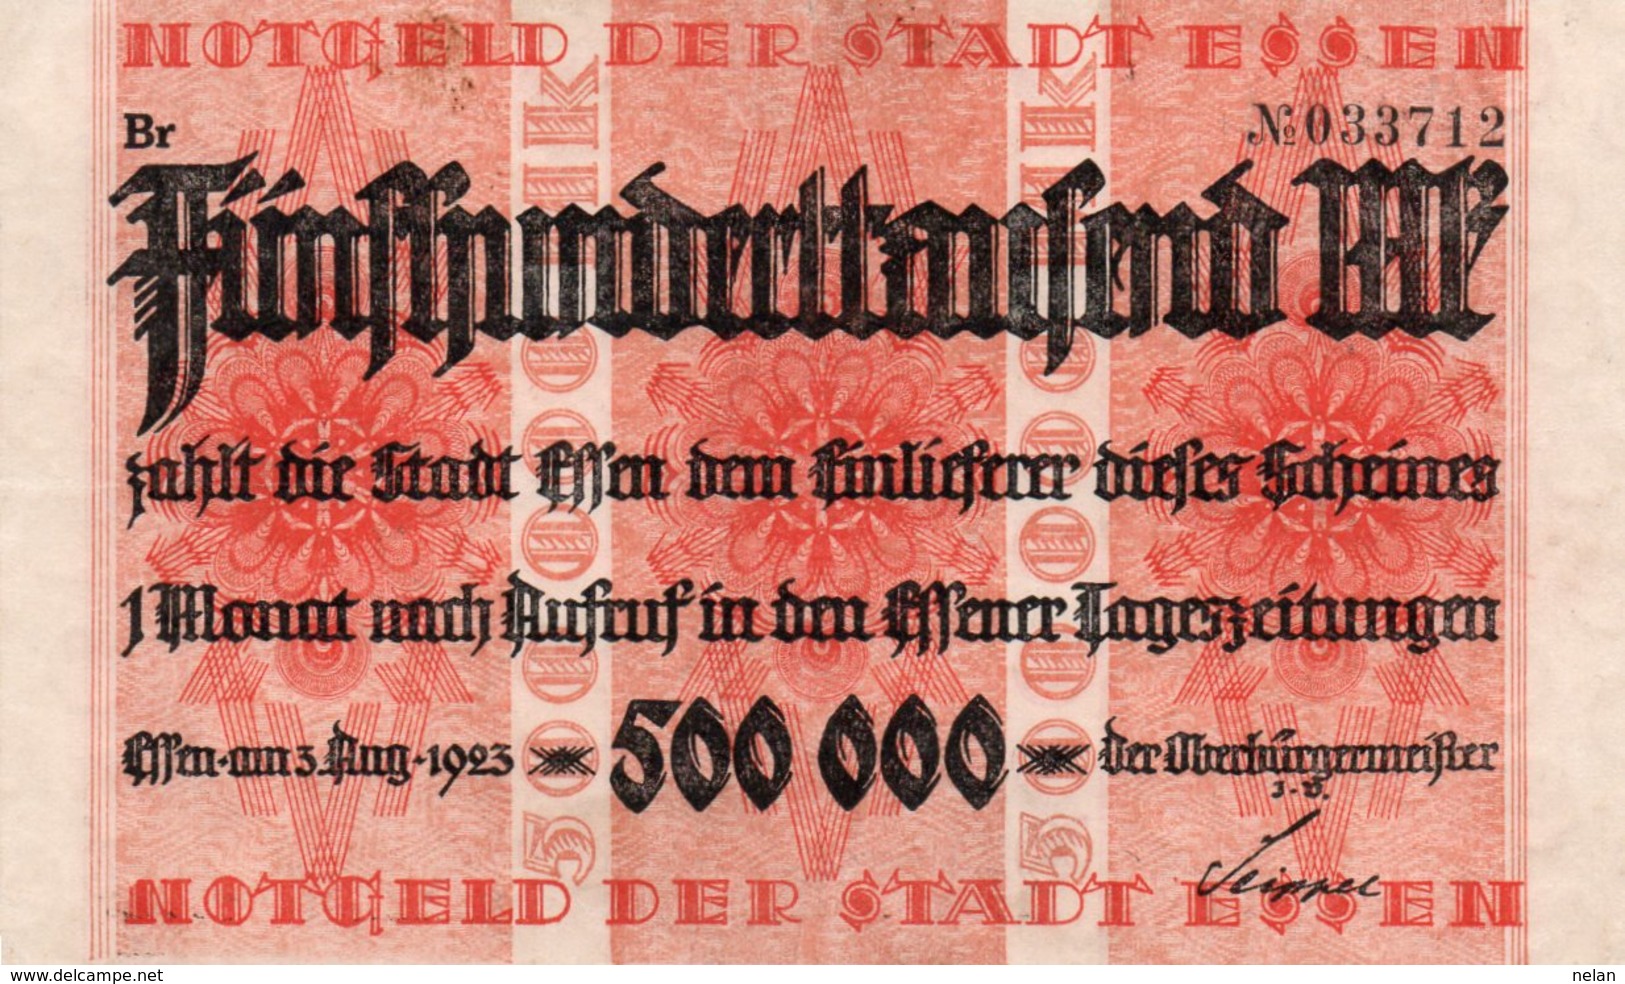 GERMANY 500000 MILION MARK 1923 -NOTGELD DER STADT ESSEN-XF+AUNC - Zwischenscheine - Schatzanweisungen